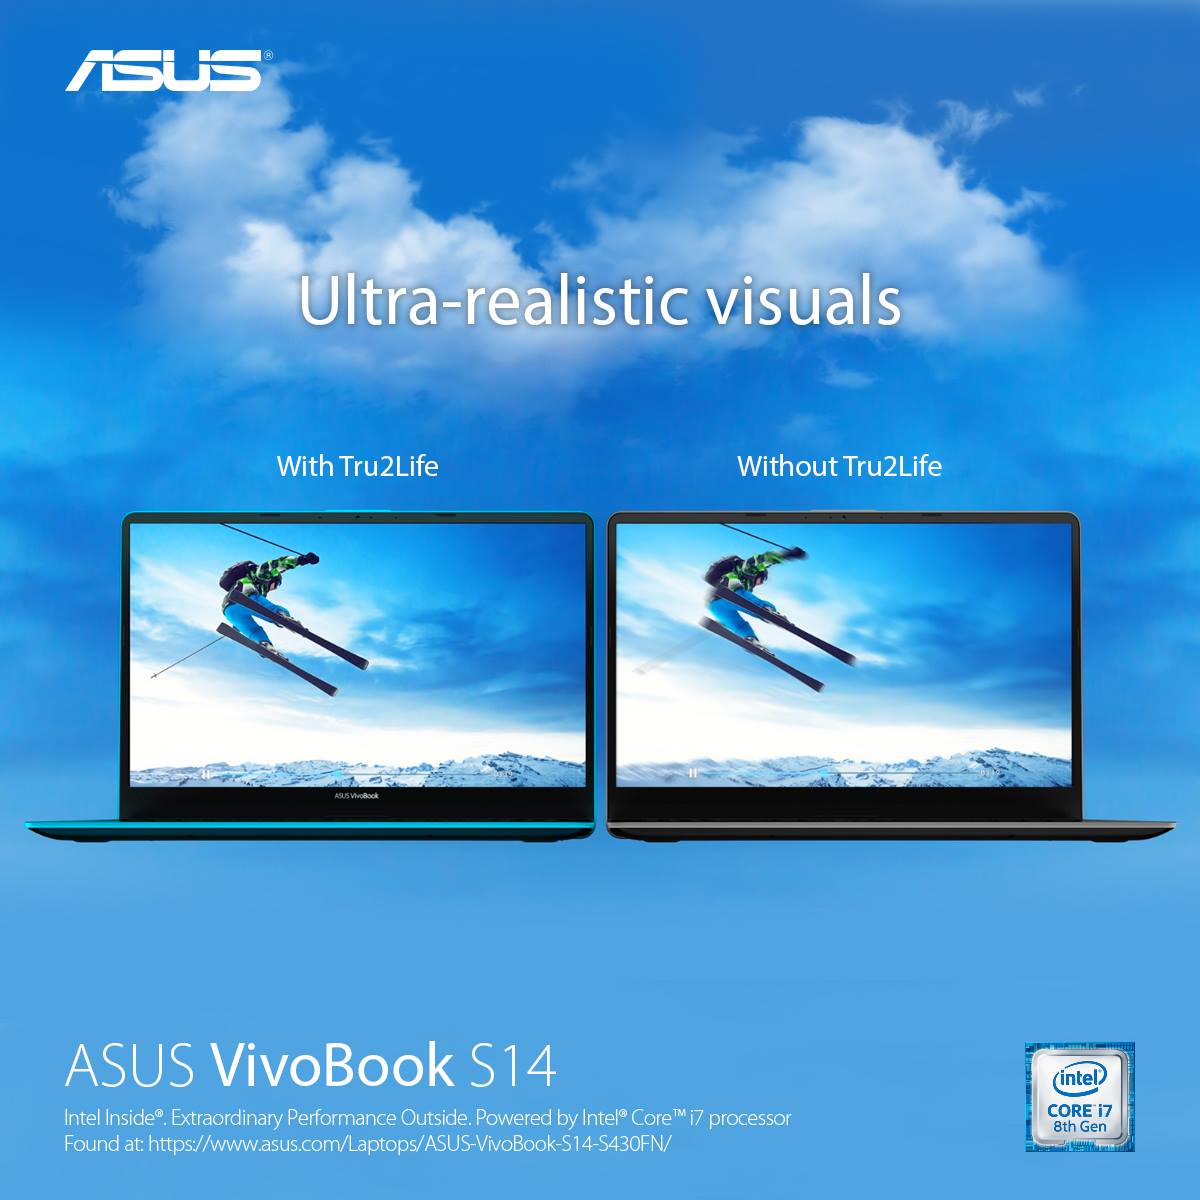 كيف يوفر لاب توب ASUS Vivobook S14 تجربة مميزة لجميع المستخدمين ؟!